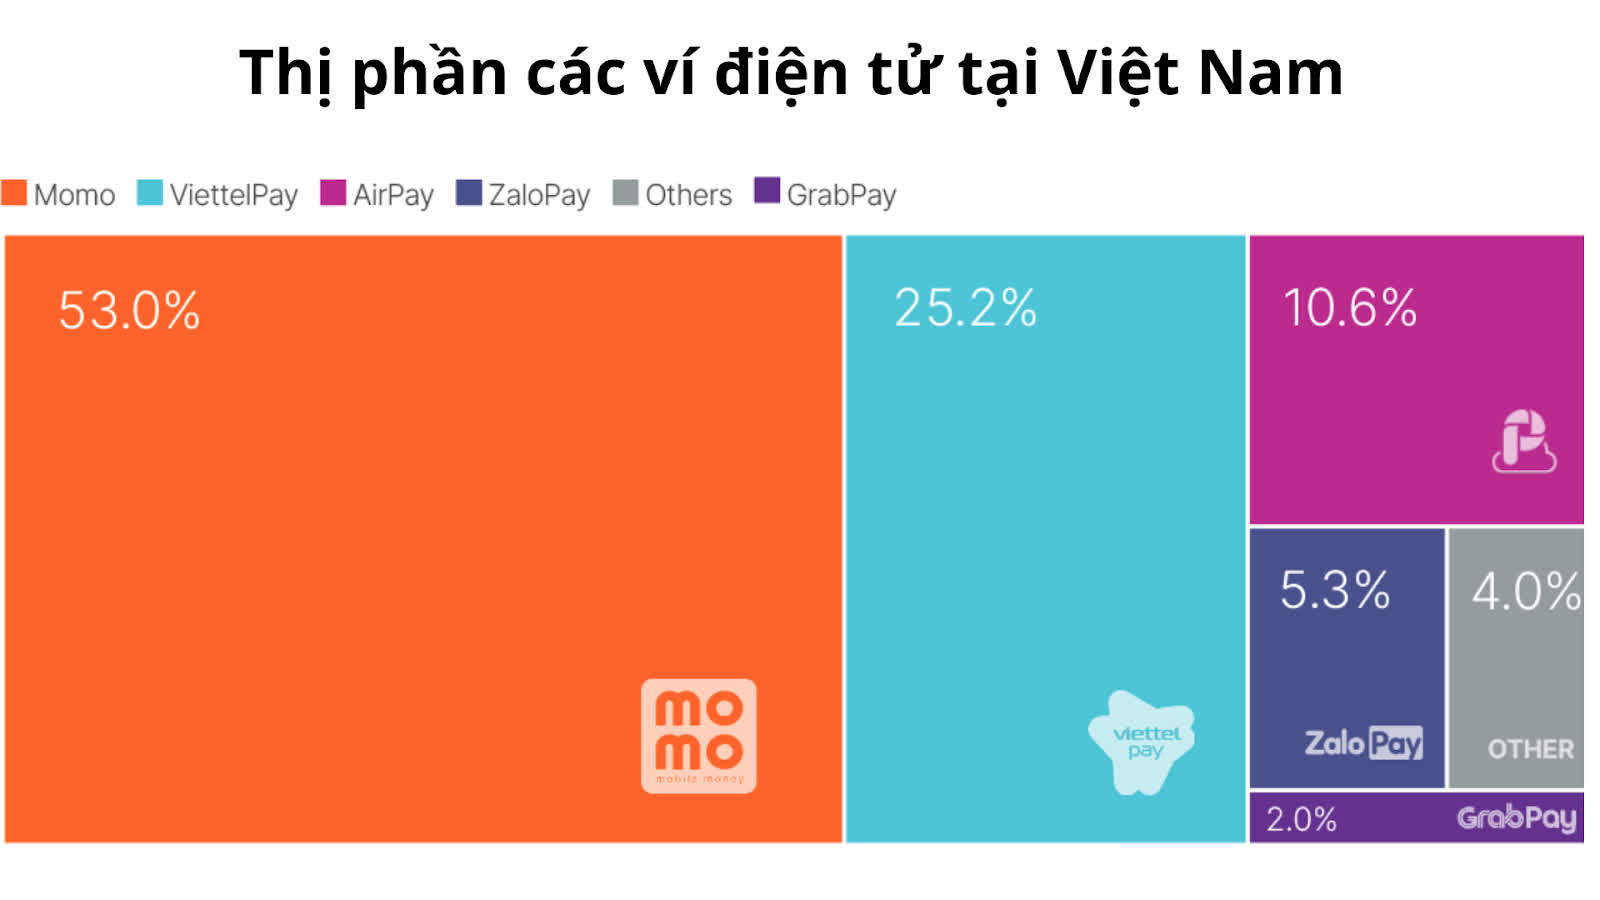 Thanh toán di động Việt Nam xếp thứ 3 thế giới về tỷ lệ người dùng, song vẫn là cuộc chiến dài hơi cho doanh nghiệp  - Ảnh 2.